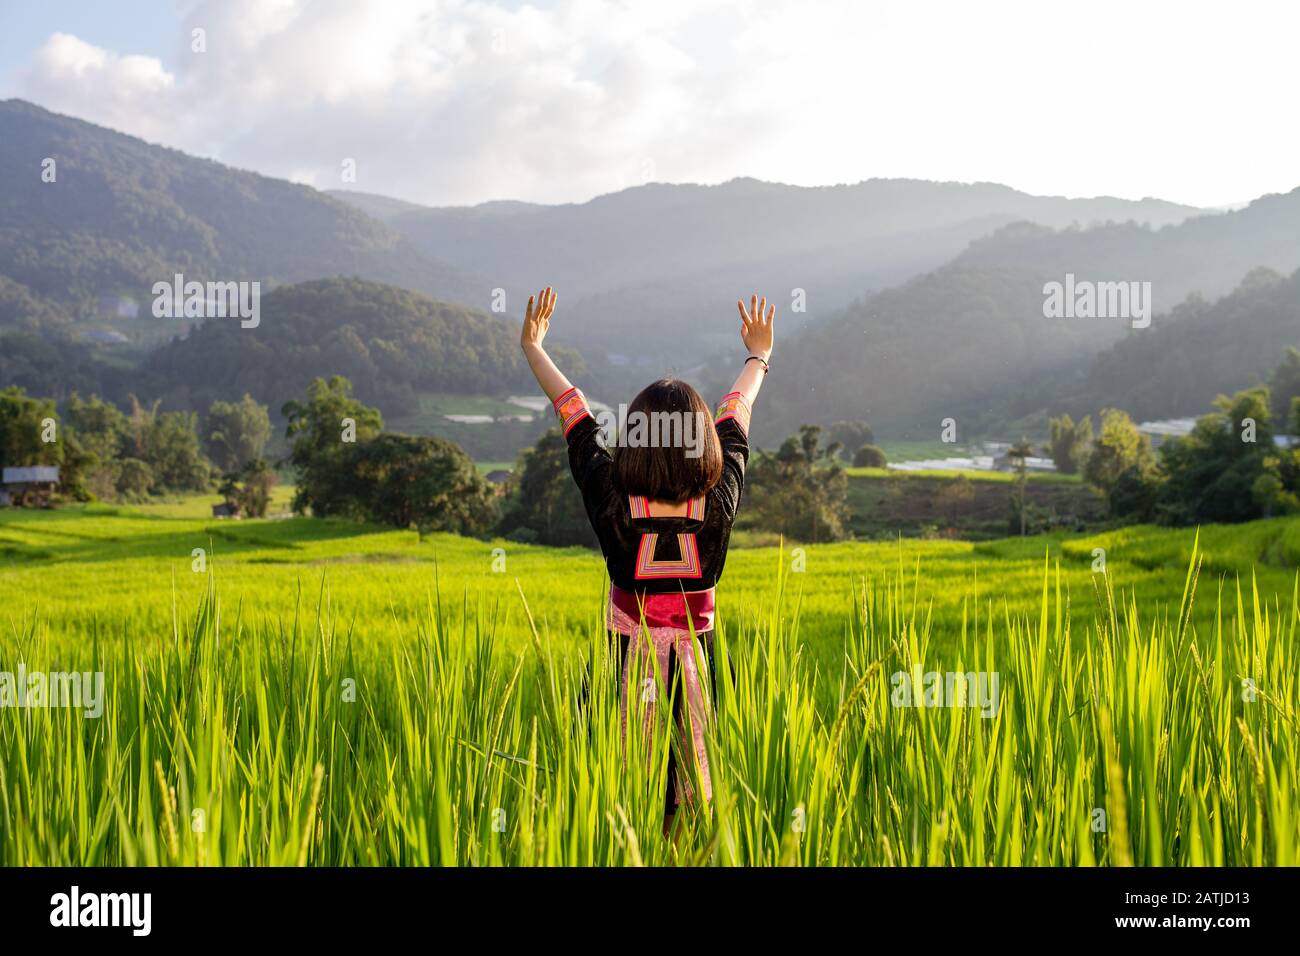 La giovane donna è felice e libera nei suoi viaggi. Foto Stock